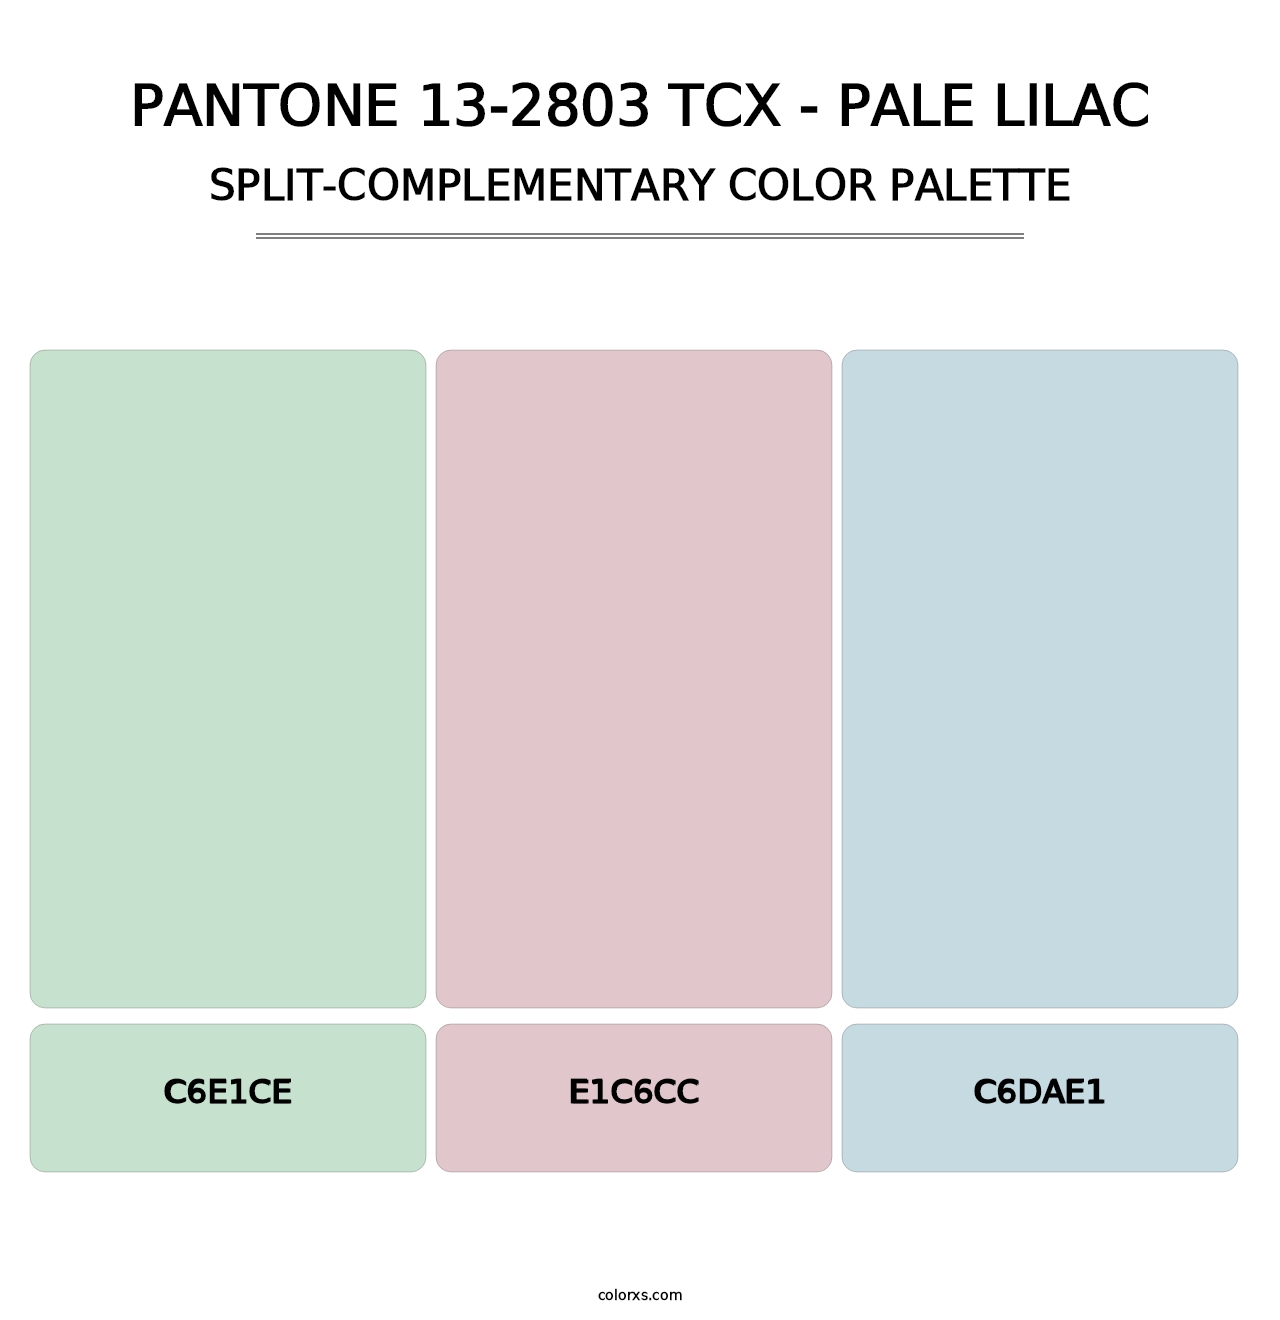 PANTONE 13-2803 TCX - Pale Lilac - Split-Complementary Color Palette